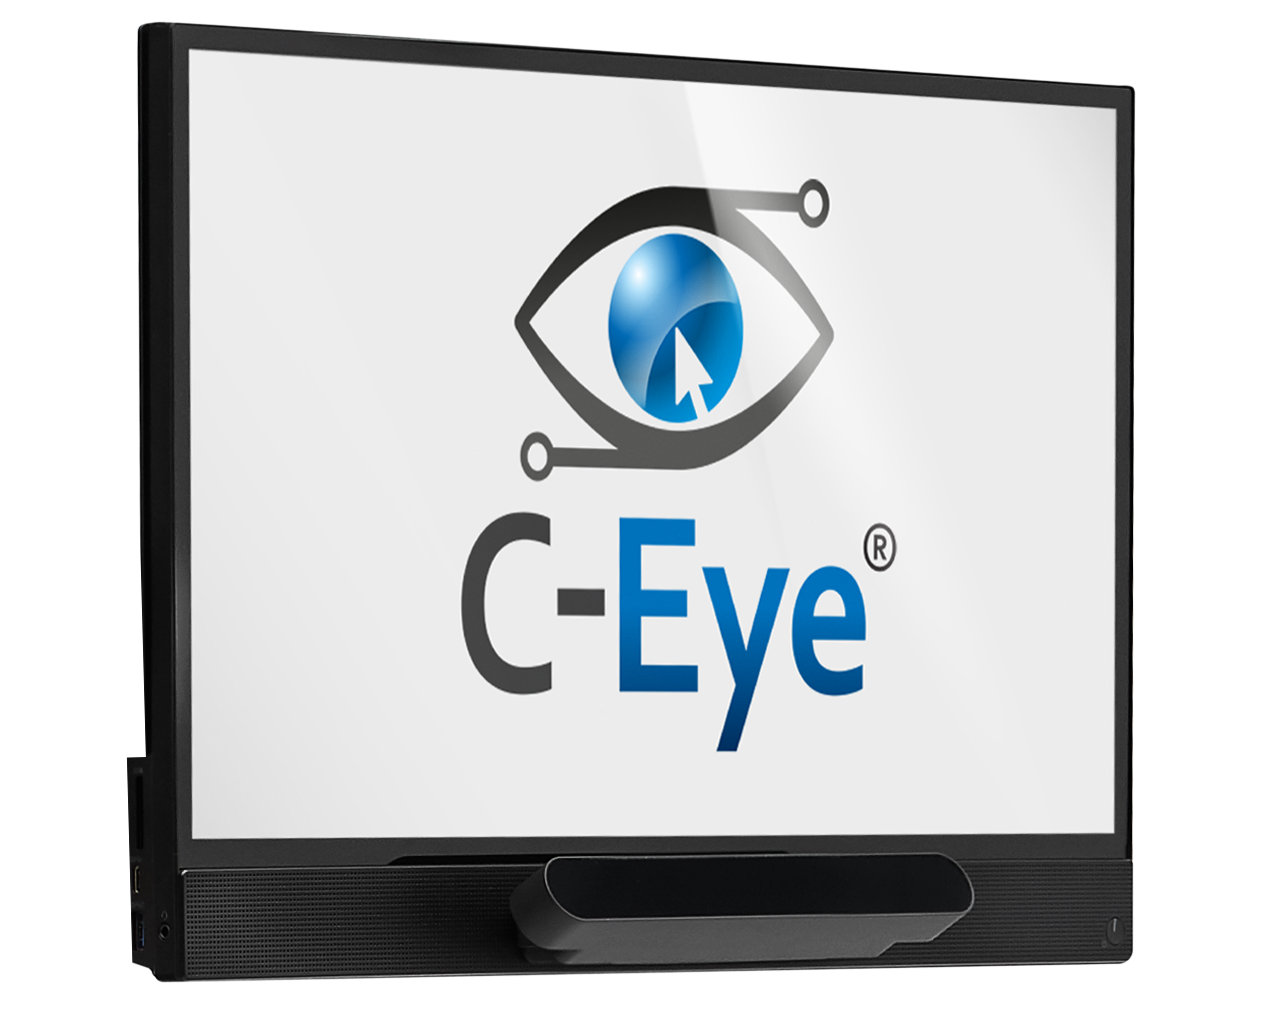 C-Eye